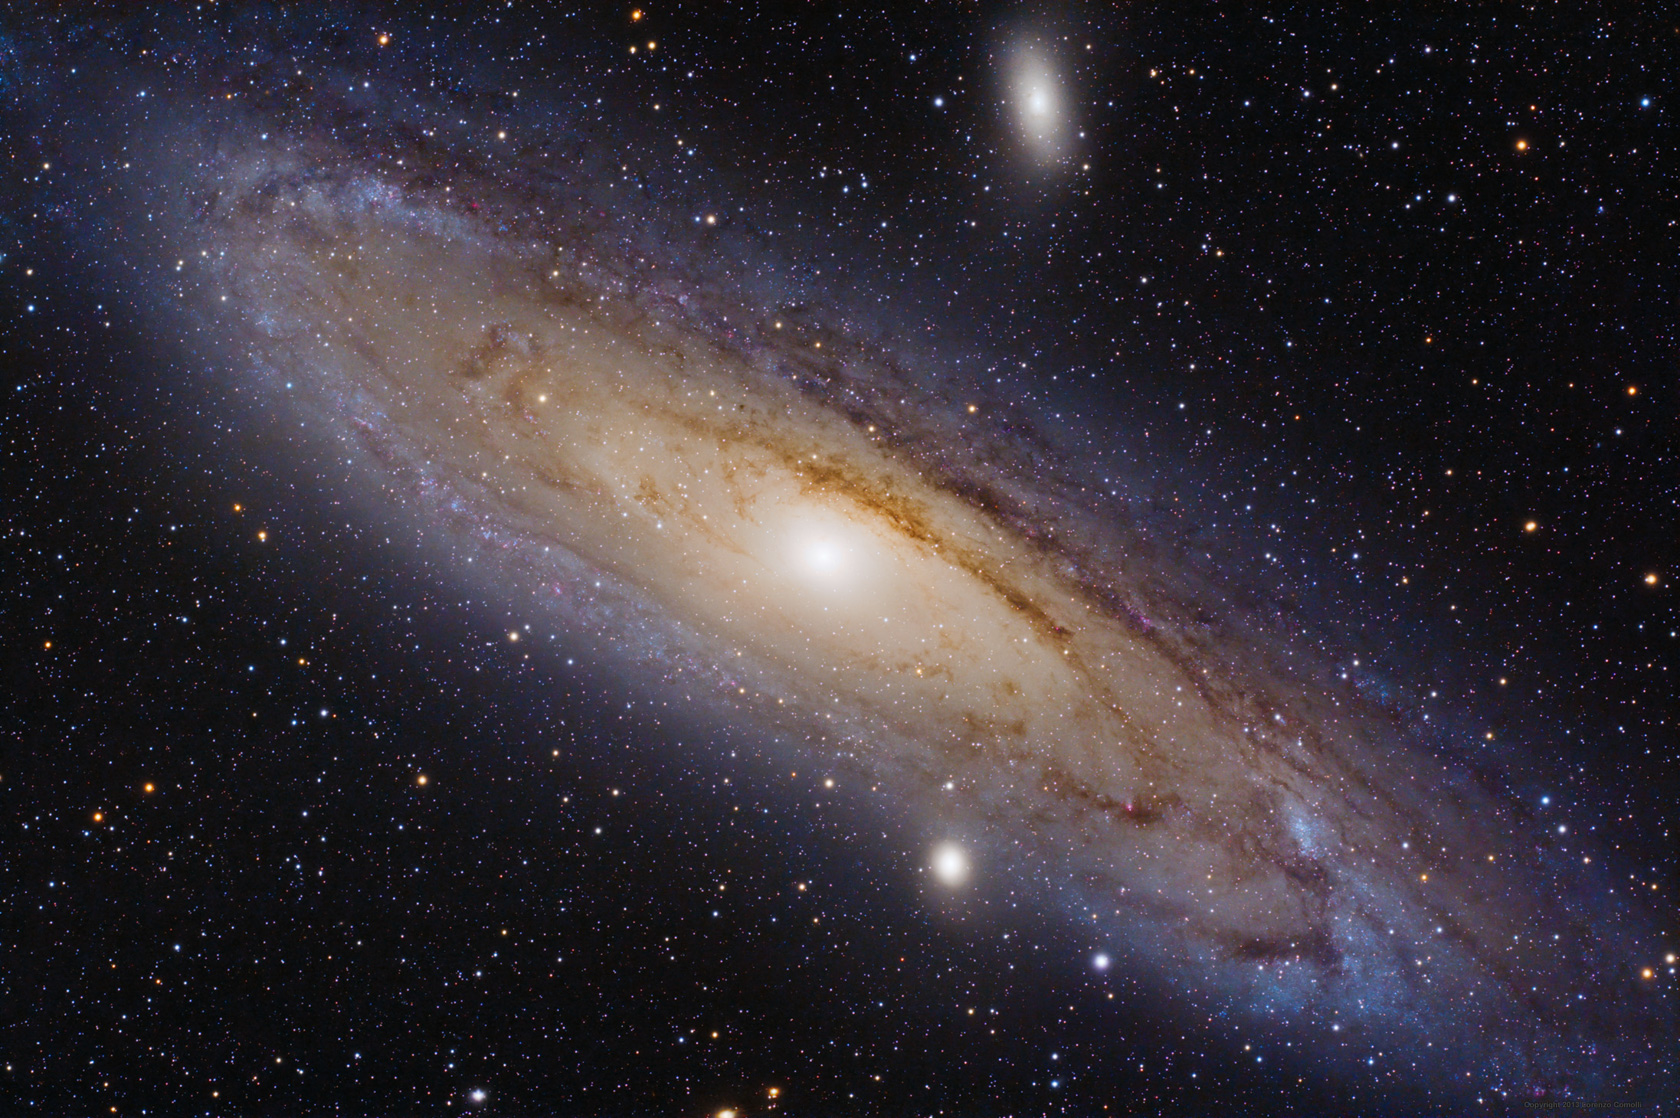 La Galassia di Andromeda è una galassia spirale gigante del Gruppo Locale. Si trova a circa 2,5 milioni di anni luce dalla Terra